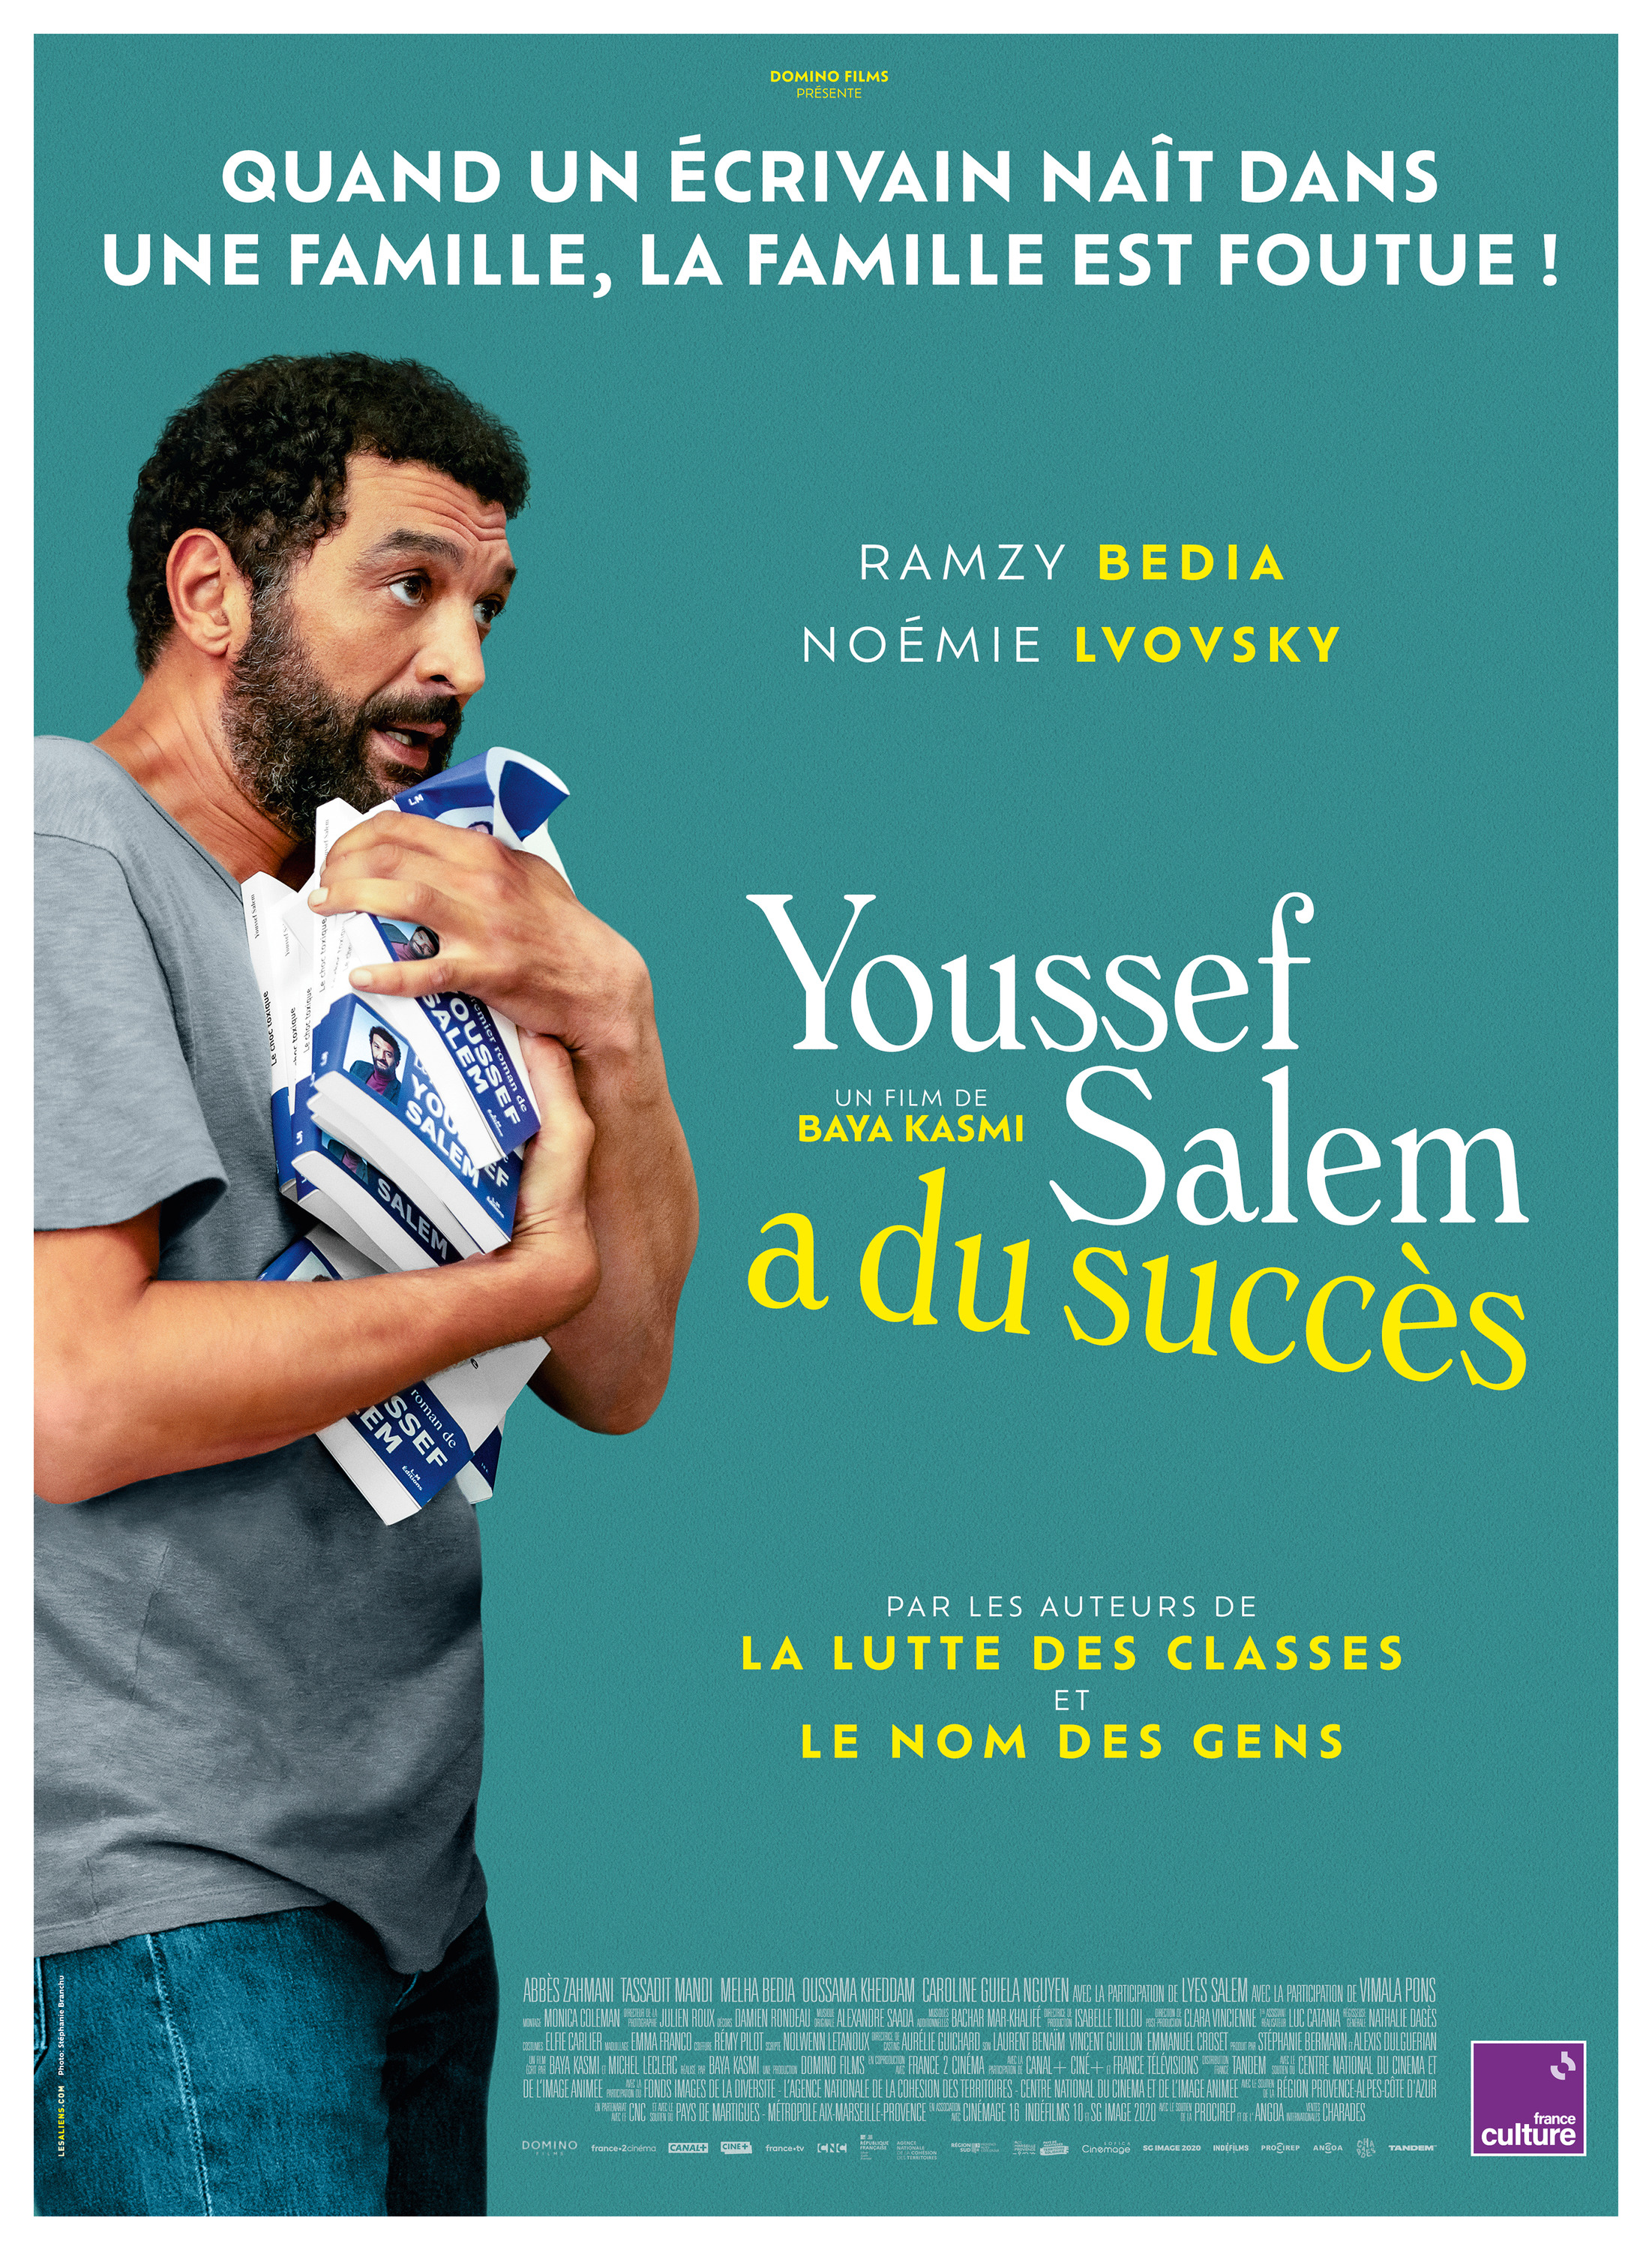 Mega Sized Movie Poster Image for Youssef Salem a du succès 